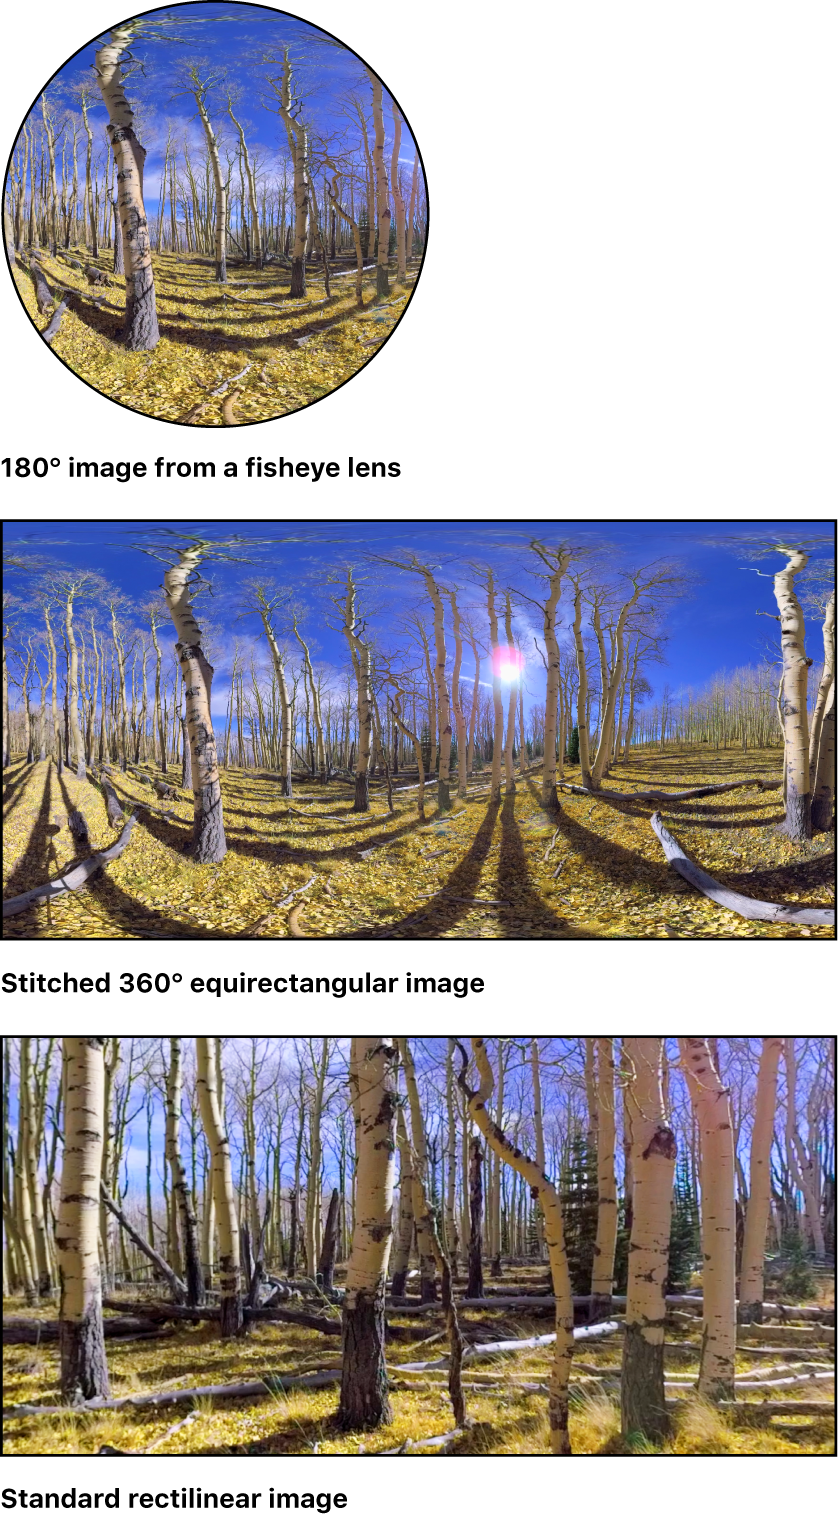 1つの魚眼イメージ、ステッチされた360°イメージ、および標準の球面収差補正イメージ